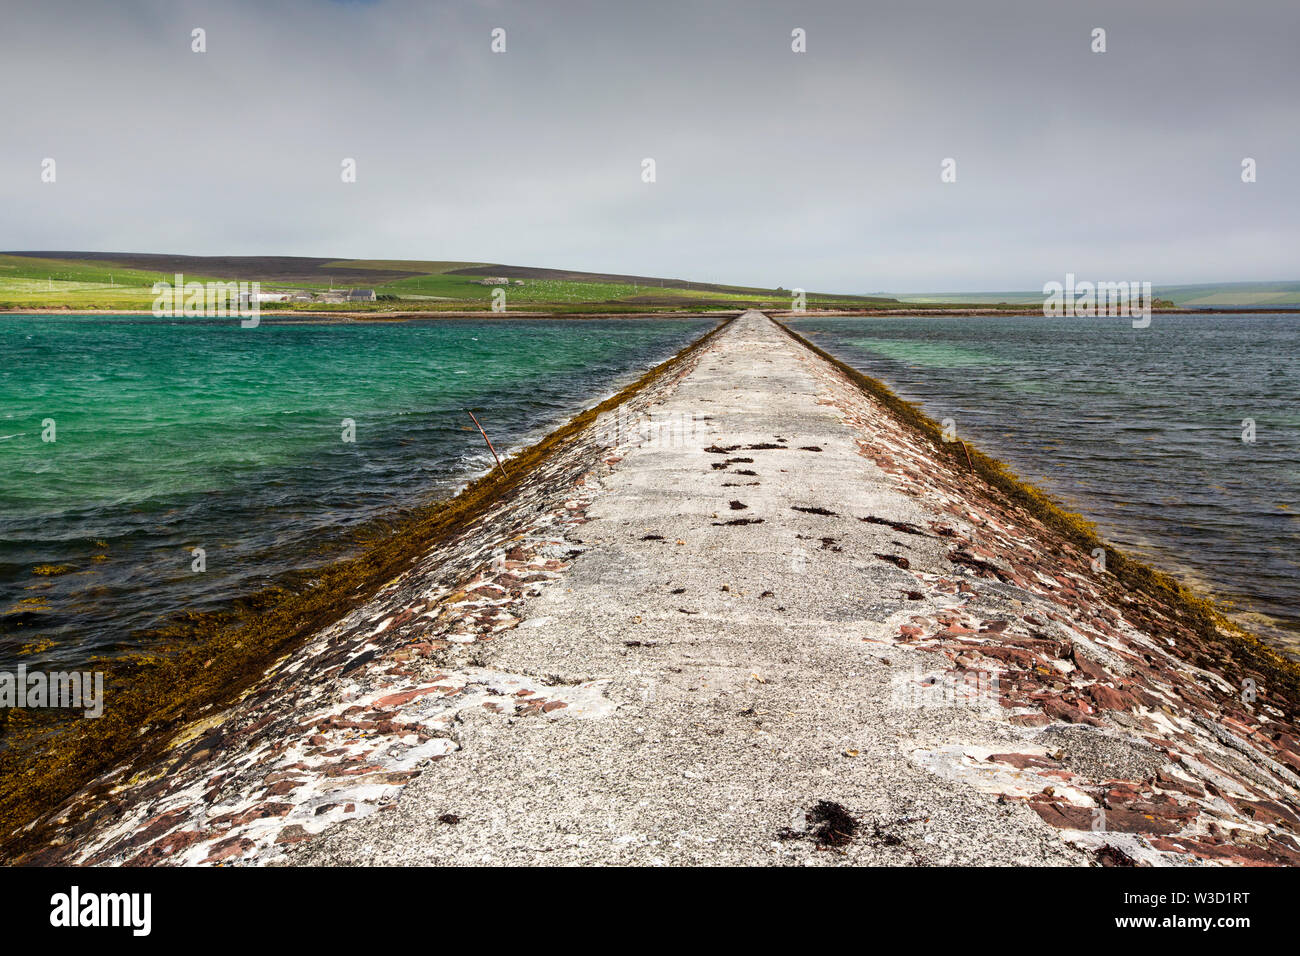 Una strada rialzata che collega Hunda Island a Burray nelle Orcadi Scozia, Regno Unito. Foto Stock